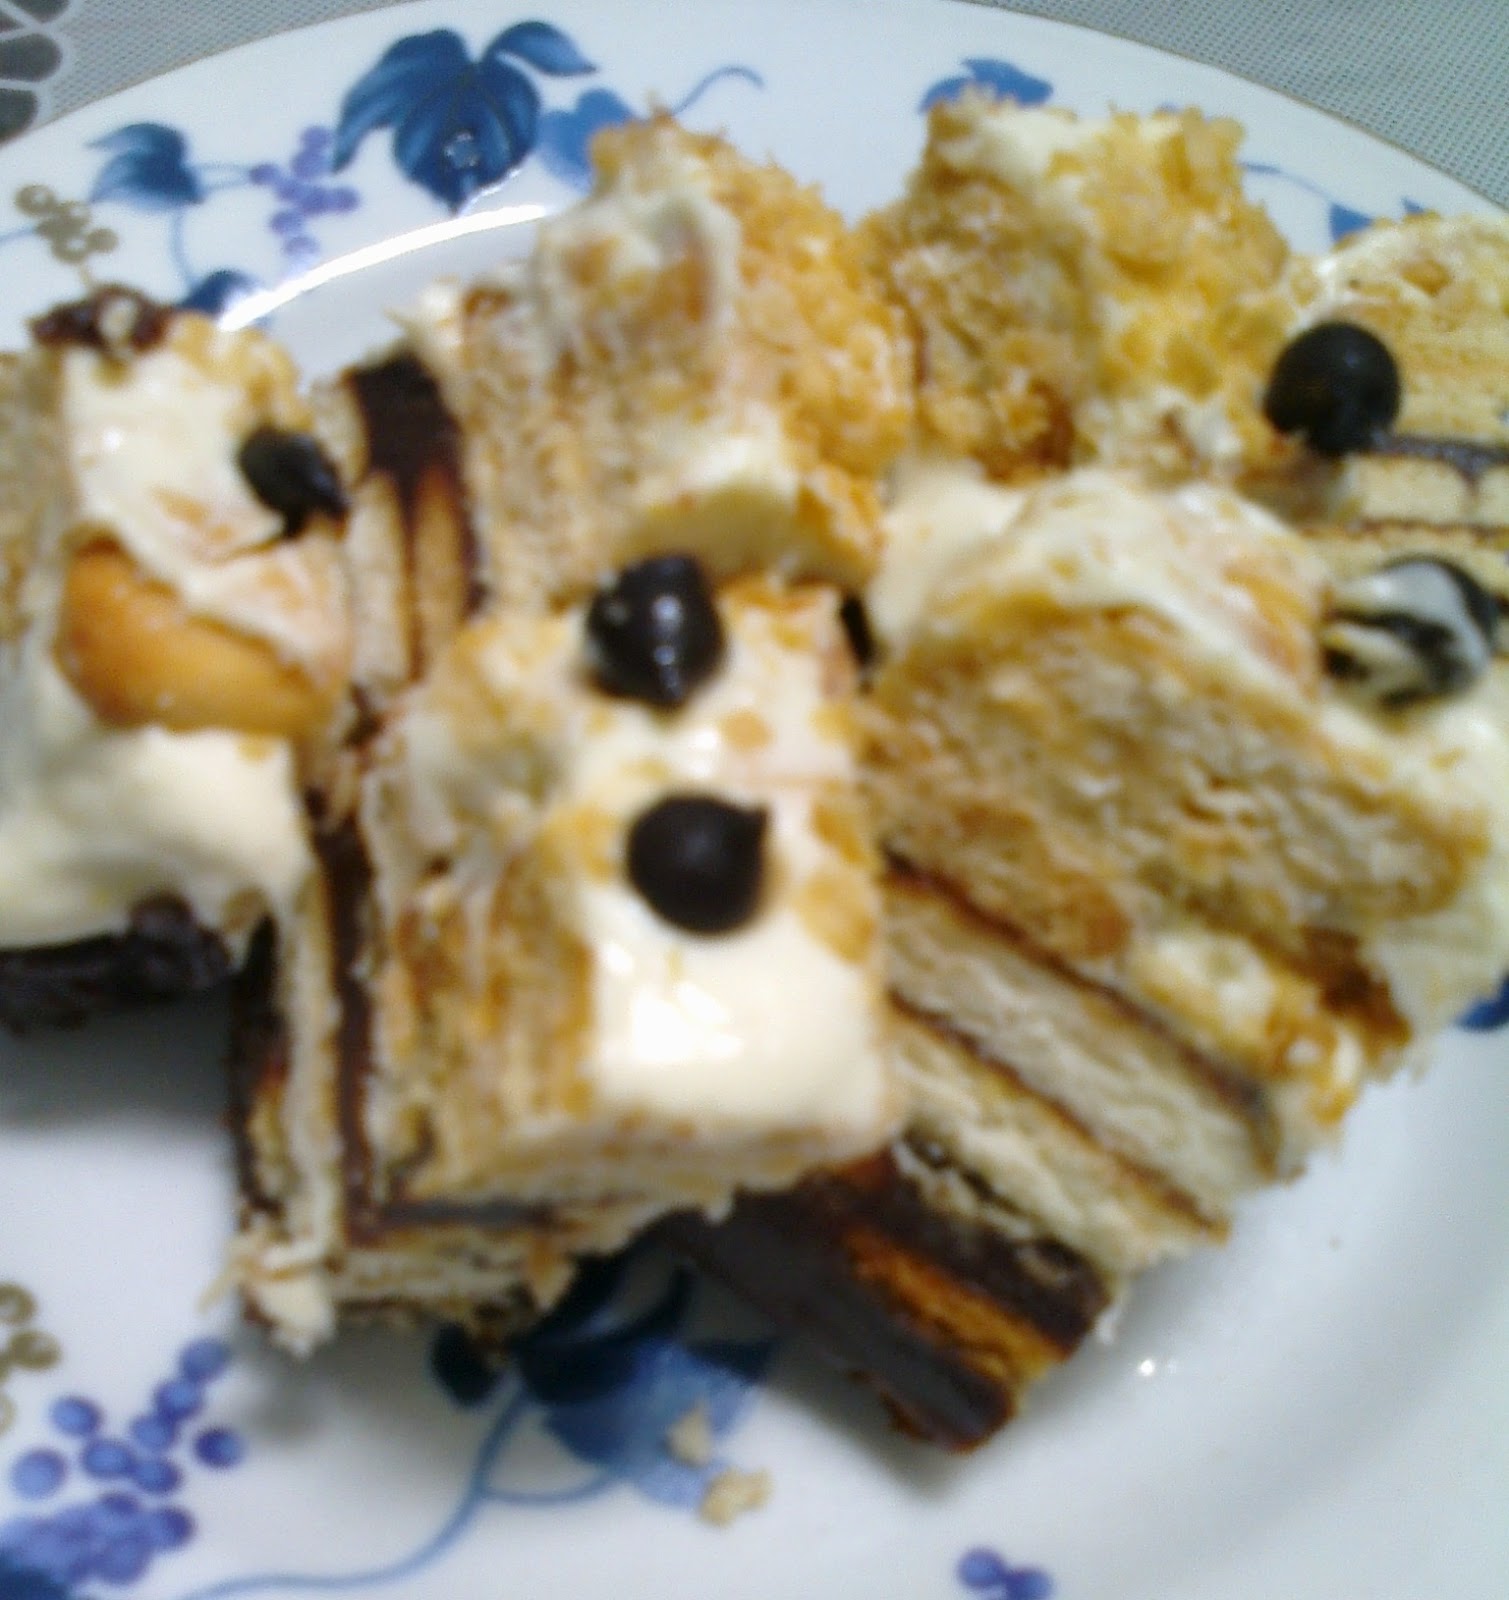 Suri hidup mama: Kek Batik Lapis Cheese